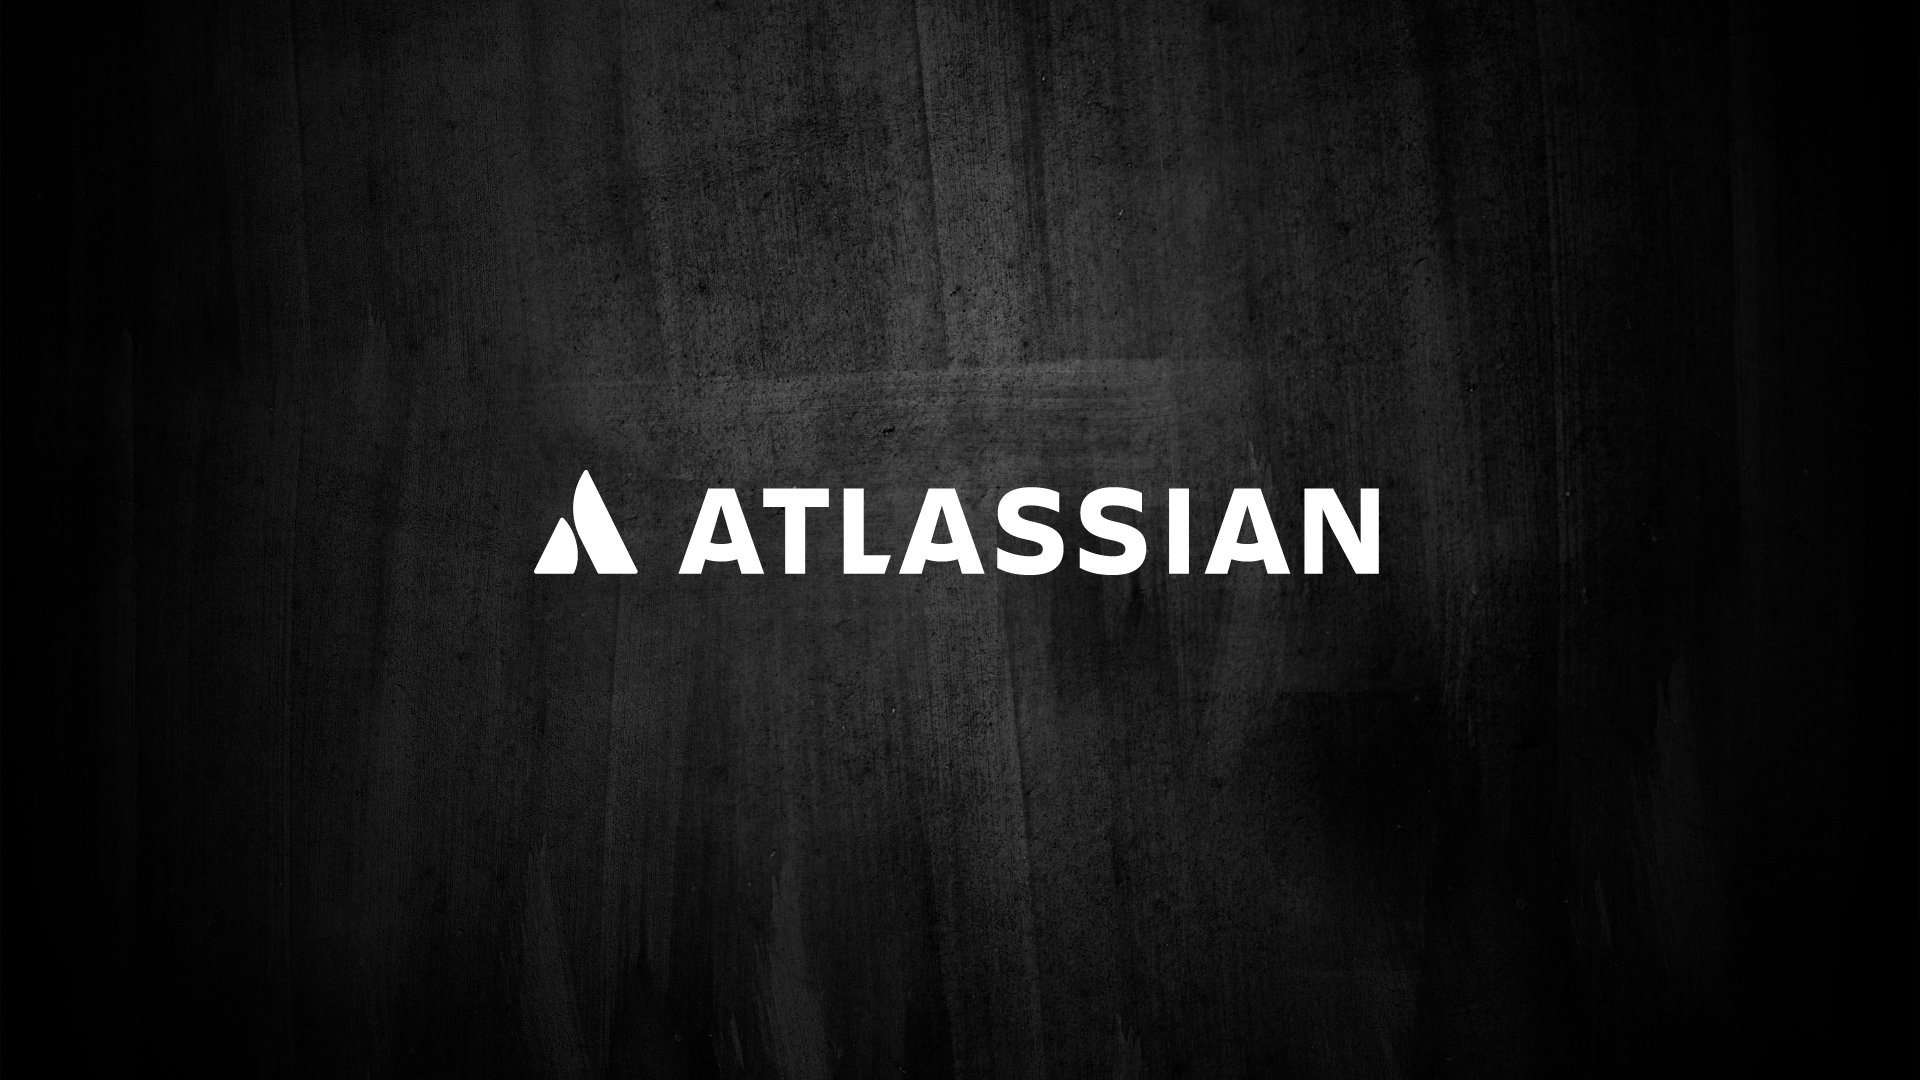 Plataforma da Atlassian Jira encontra-se com problemas